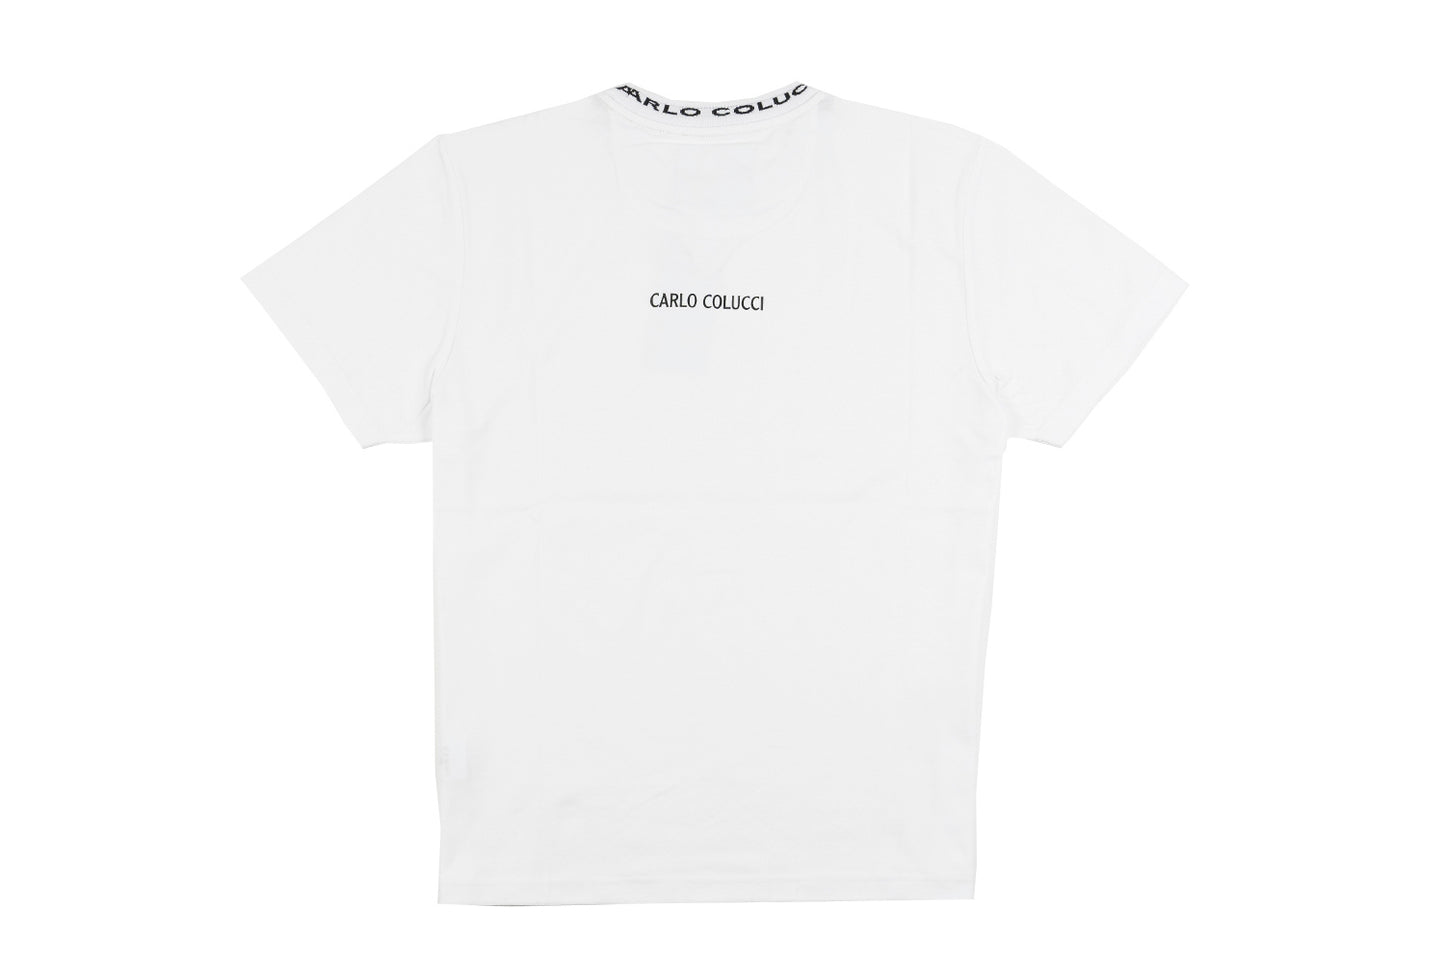 Basic Line T-Shirt